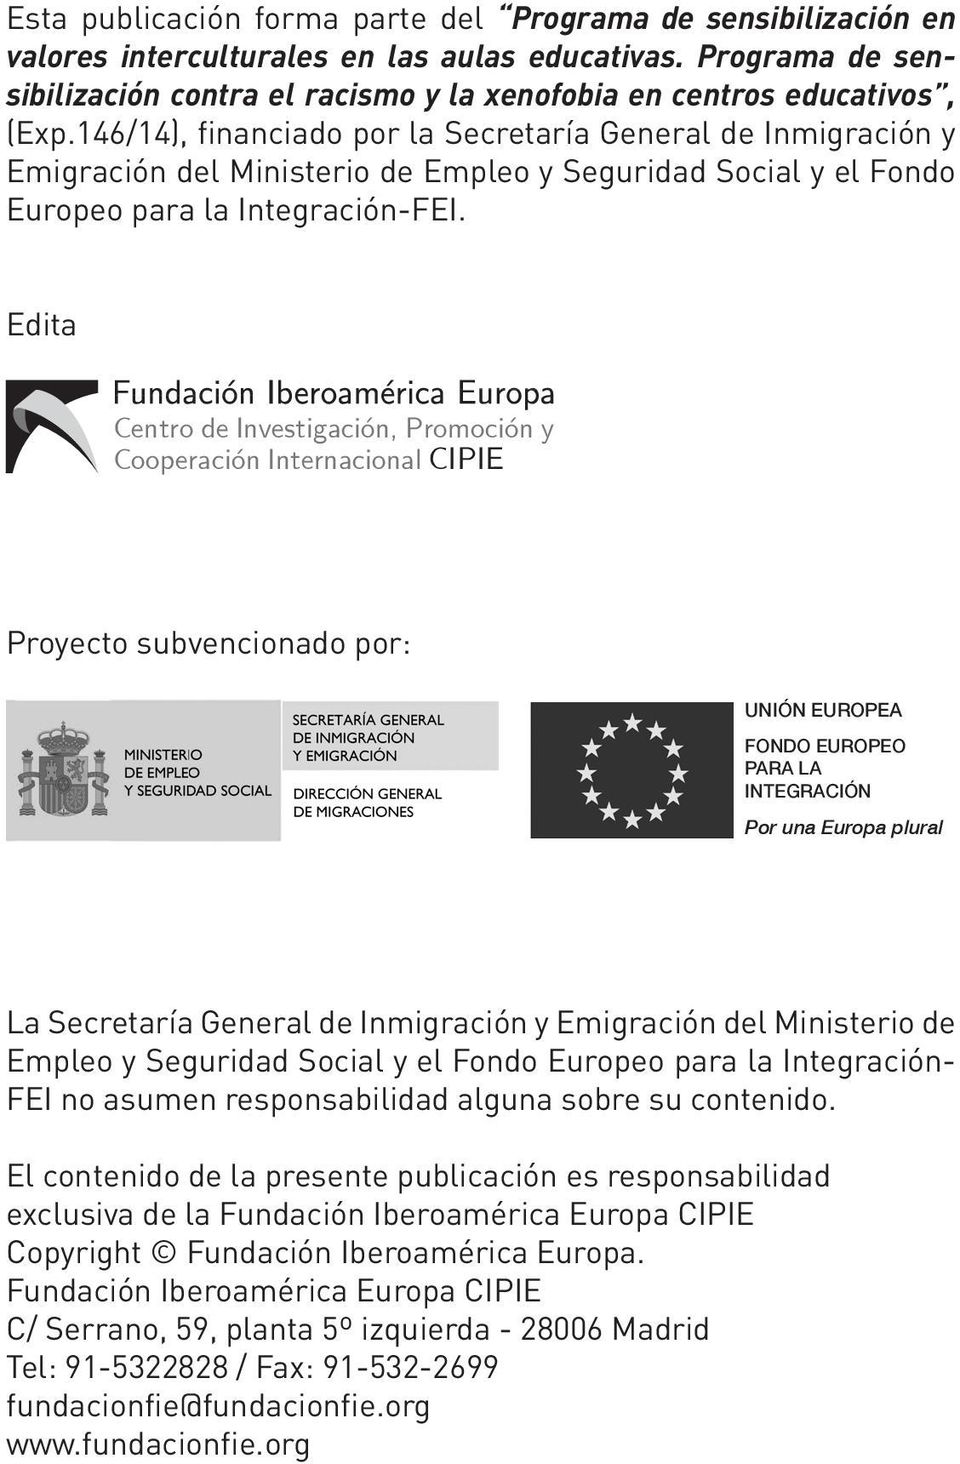 146/14), financiado por la Secretaría General de Inmigración y Emigración del Ministerio de Empleo y Seguridad Social y el Fondo Europeo para la Integración-FEI.